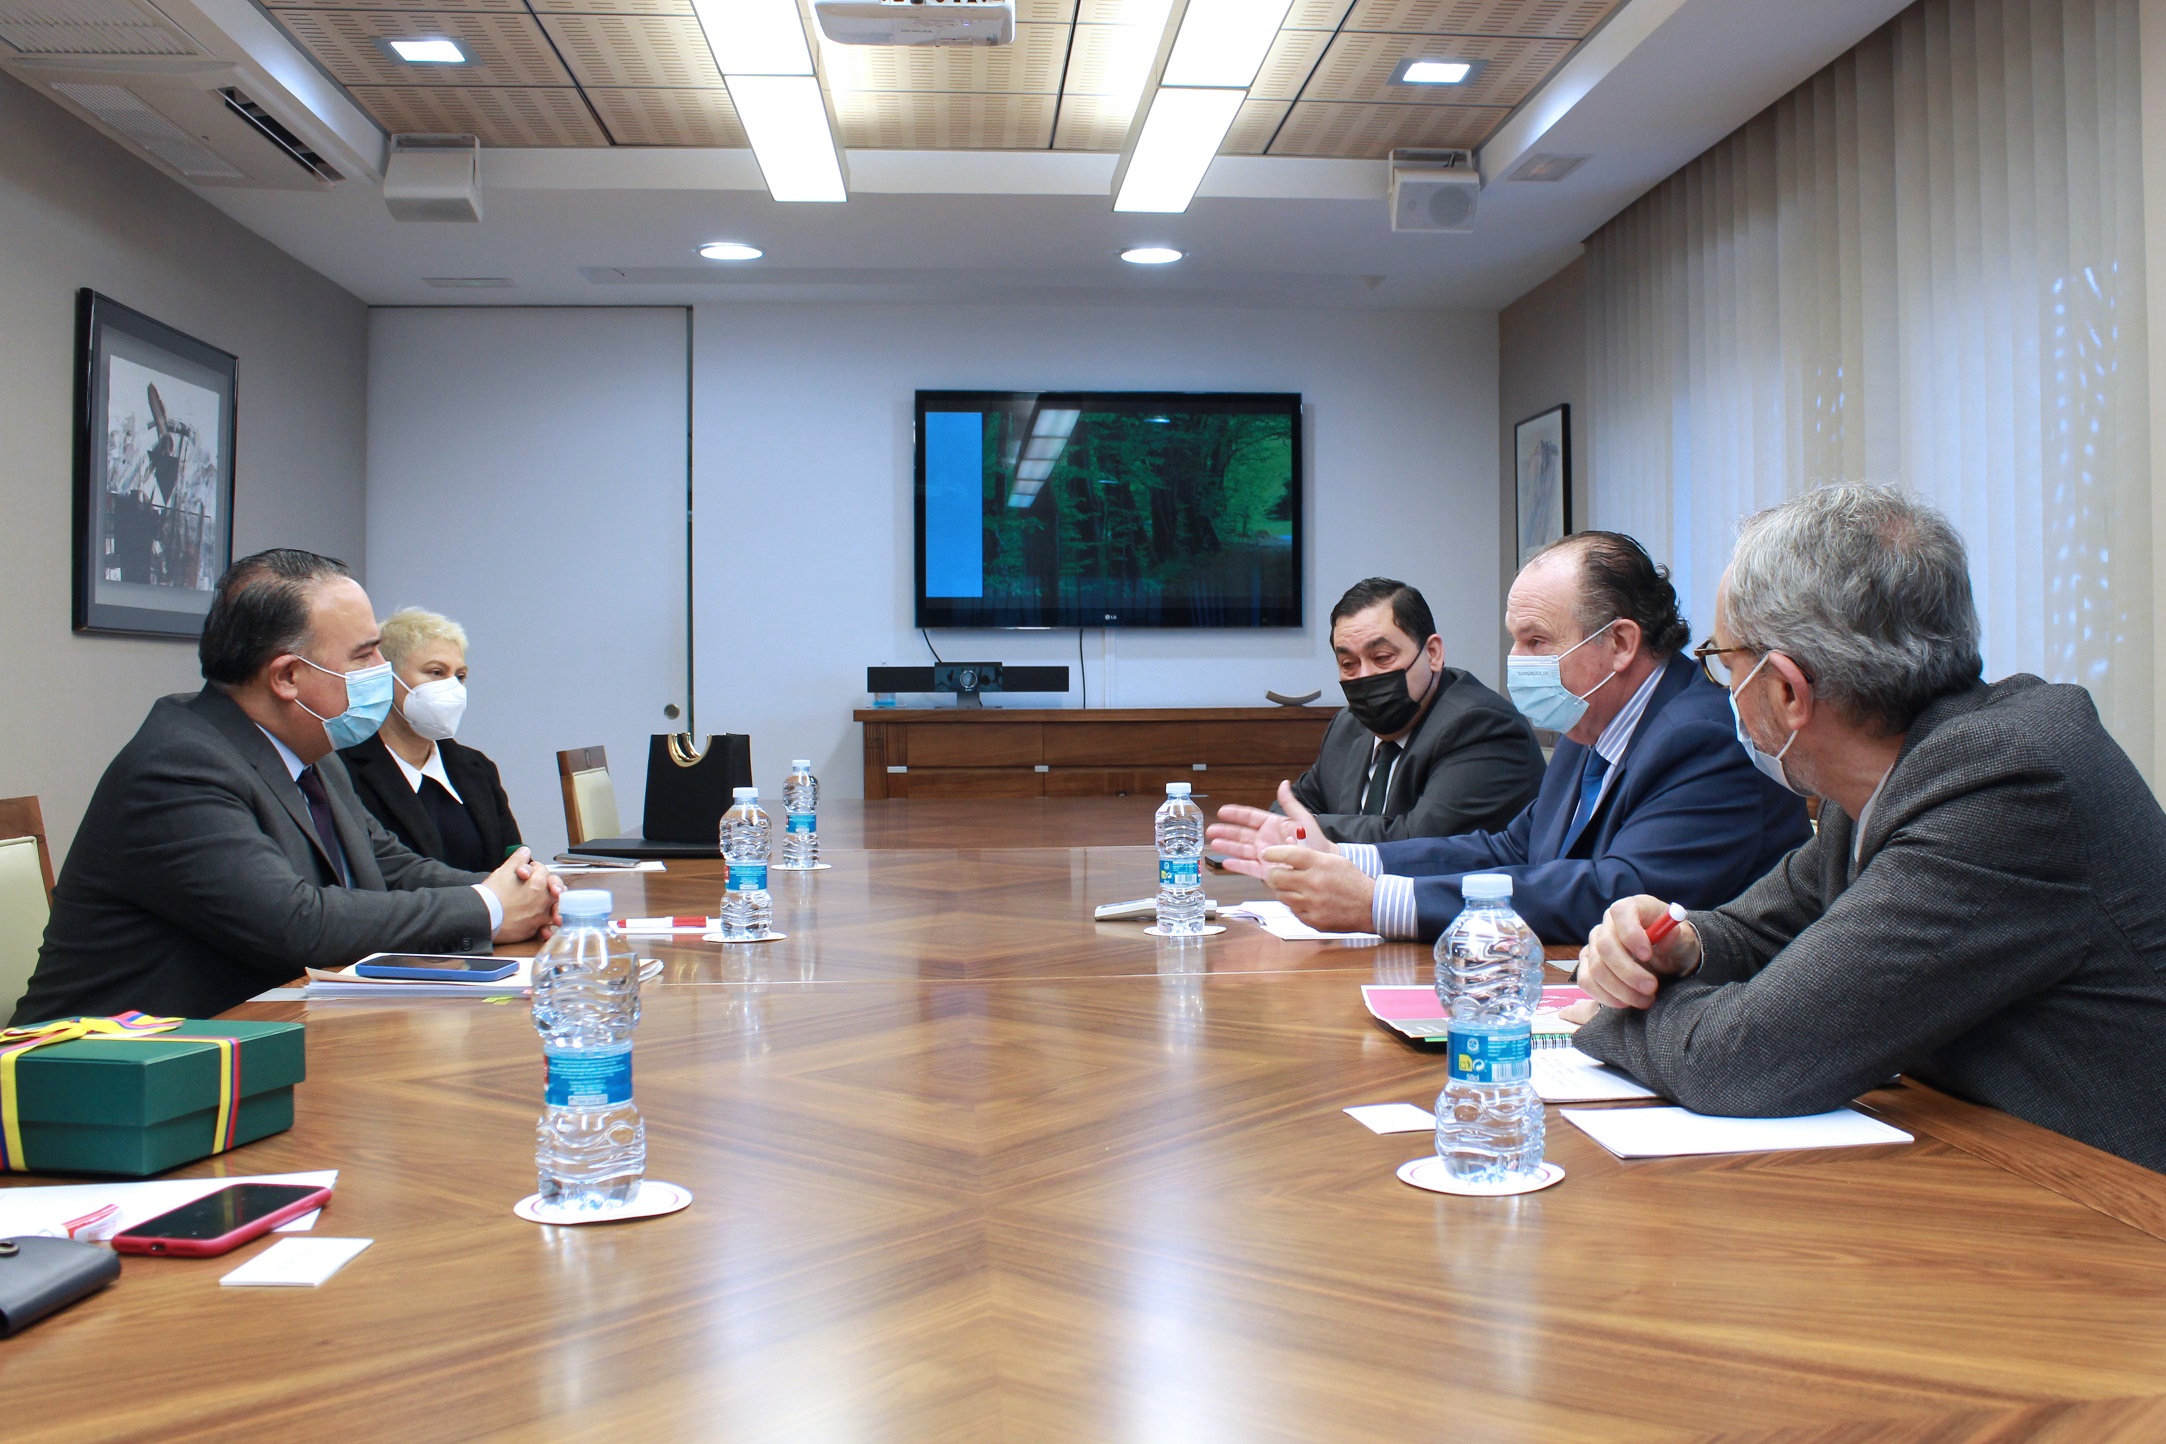 Fotonoticia: l’ambaixador de Colòmbia a Espanya es reuneix amb un grup d’empresaris en Cambra València